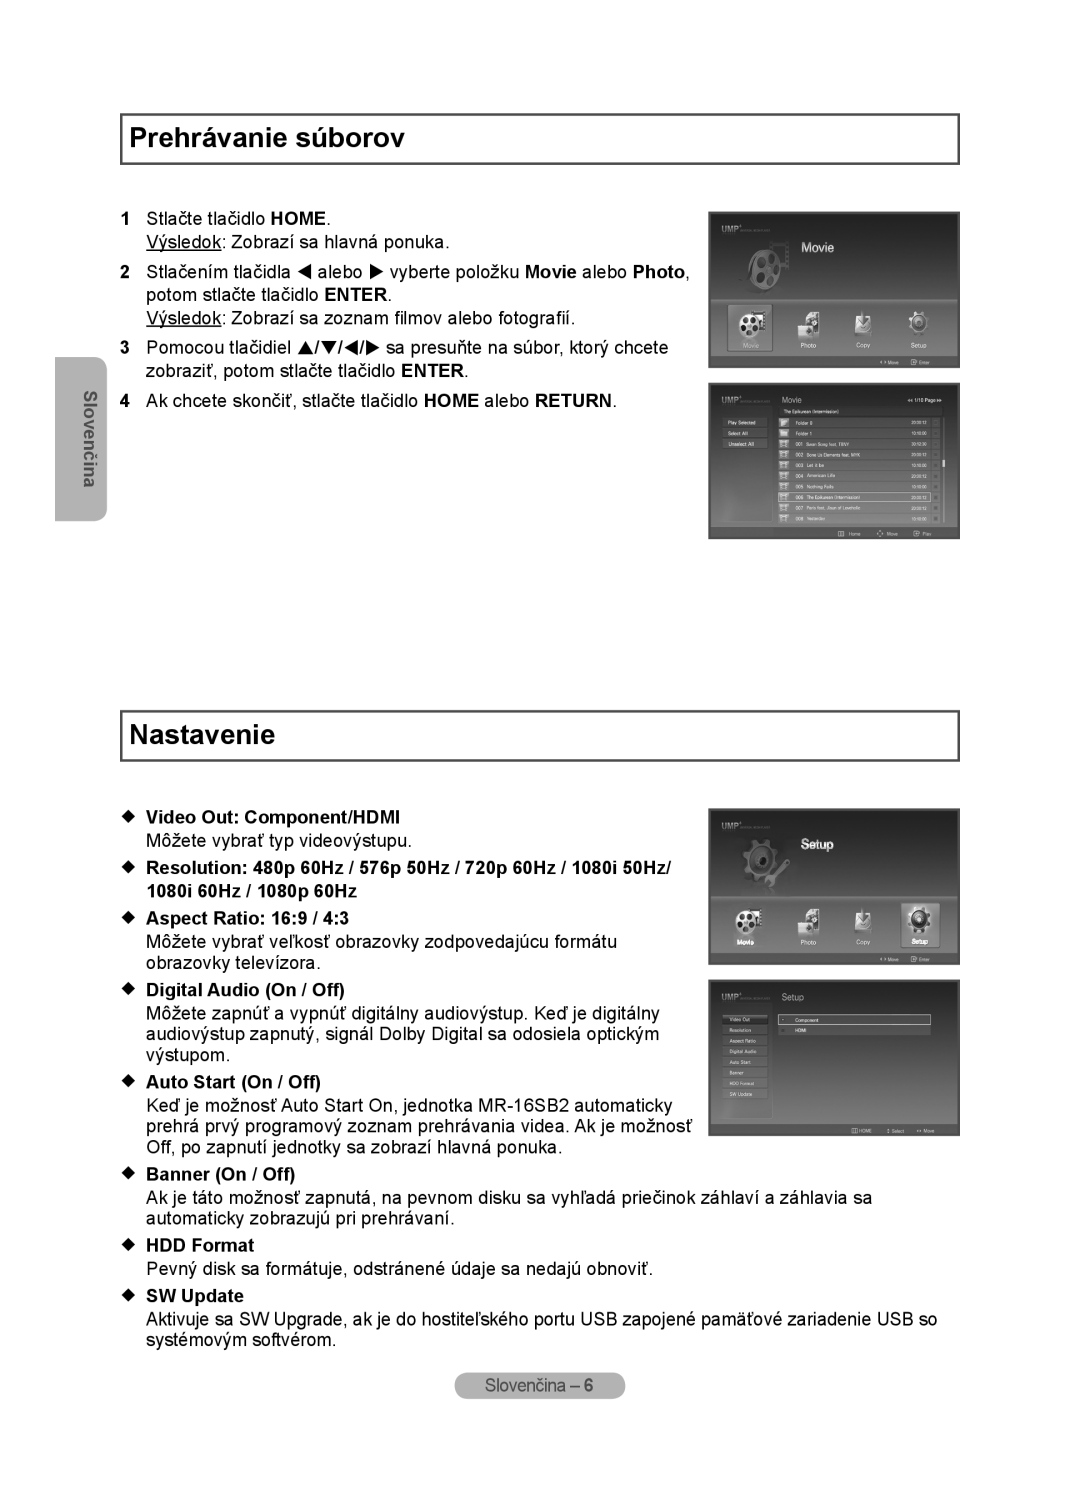 Samsung MR-16SB2 Prehrávanie súborov, Nastavenie, Slovenčina,  Video Out Component/HDMI,  Aspect Ratio 169,  HDD Format 